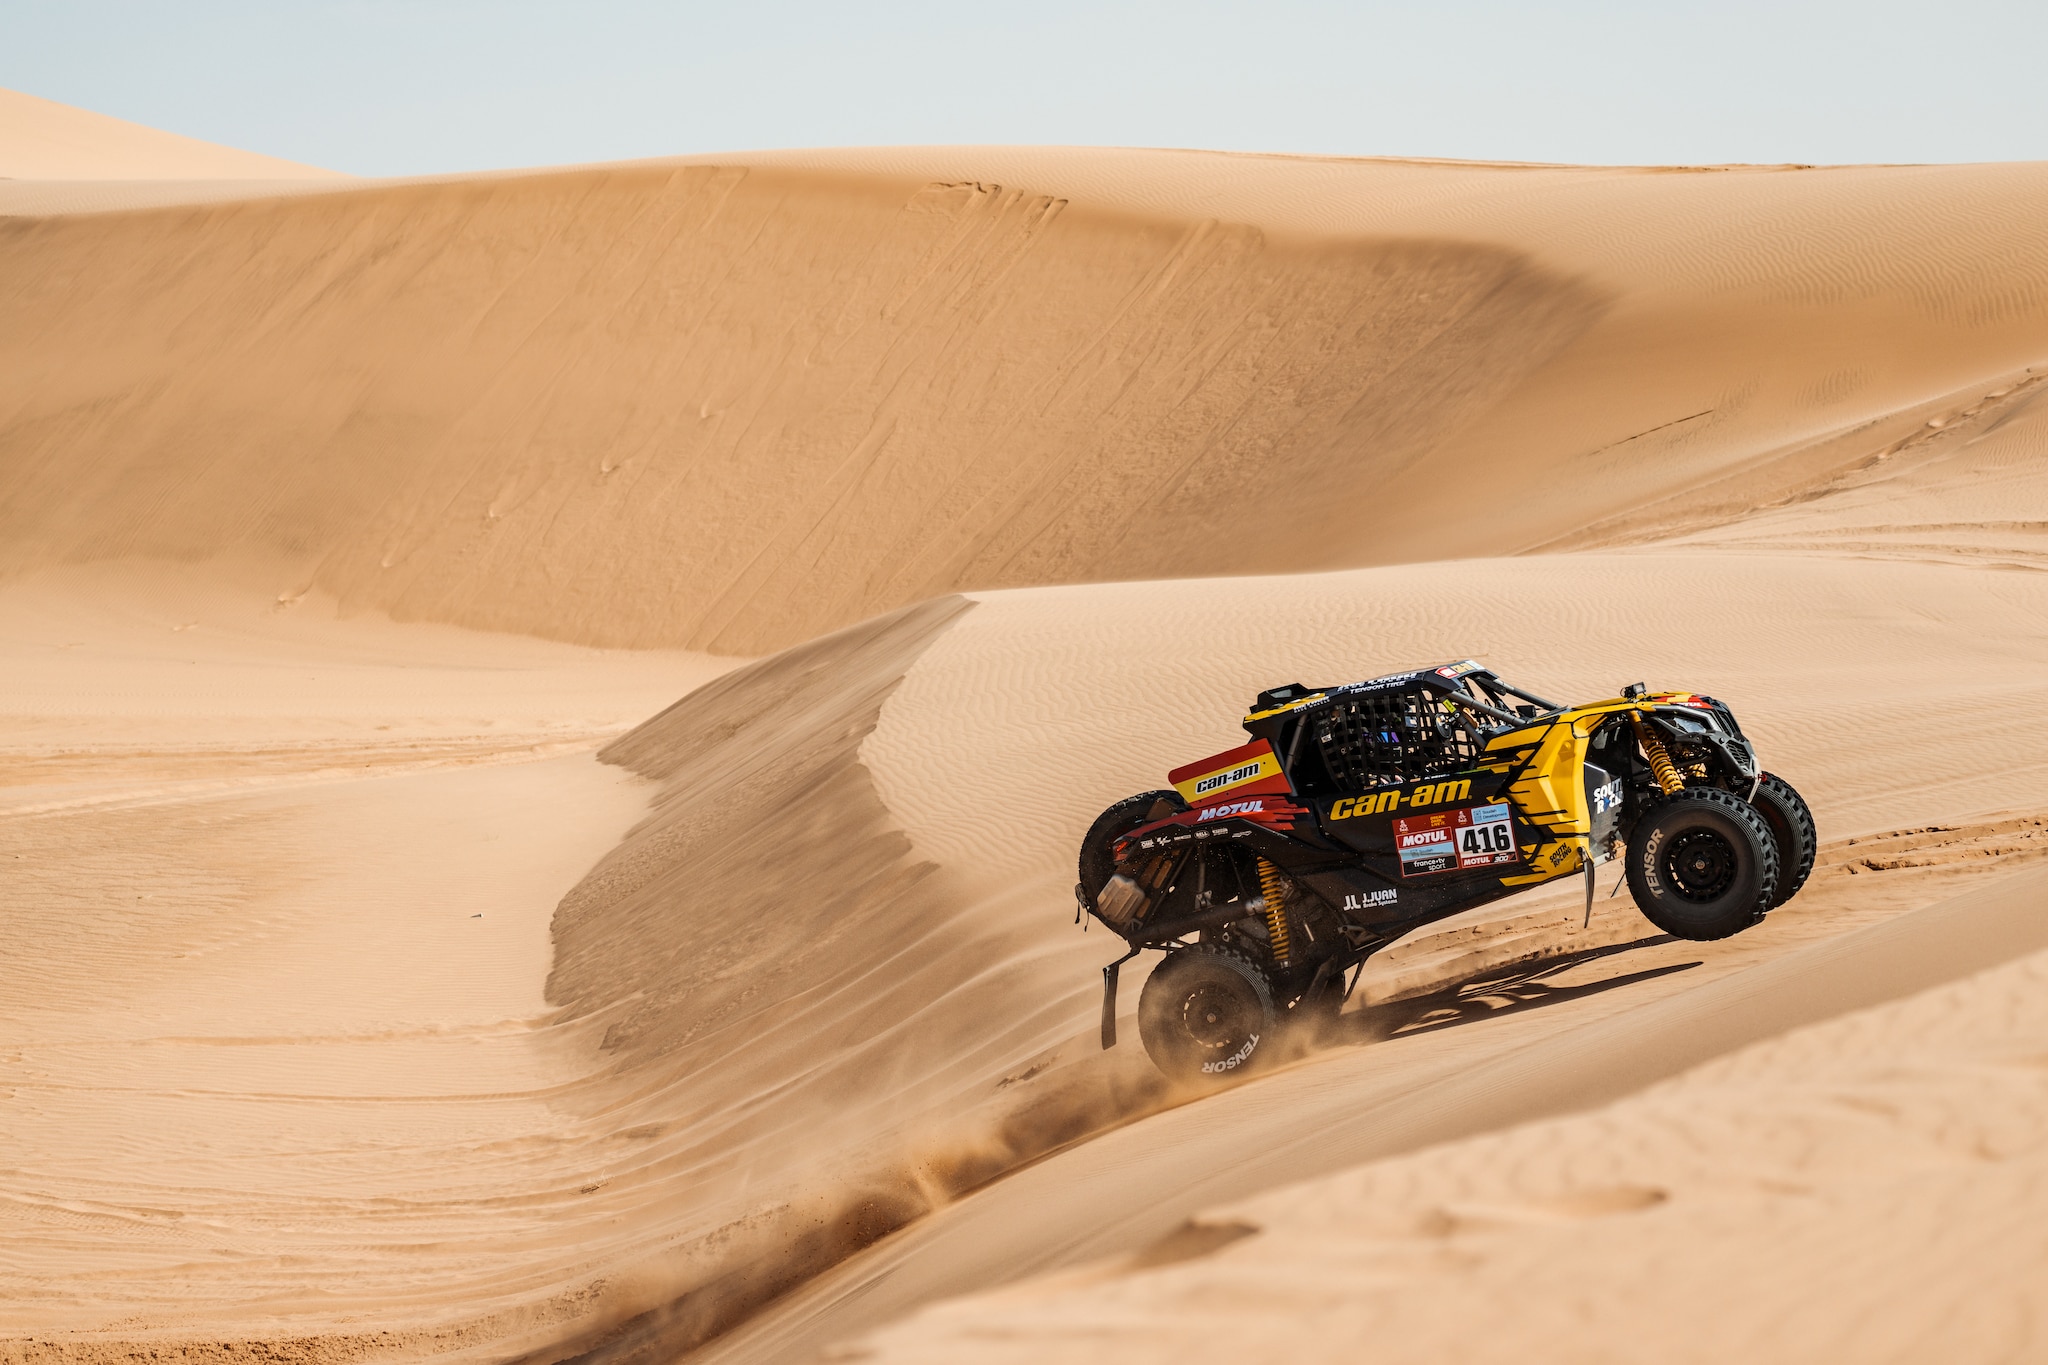 Maverick andando em uma duna de areia no deserto